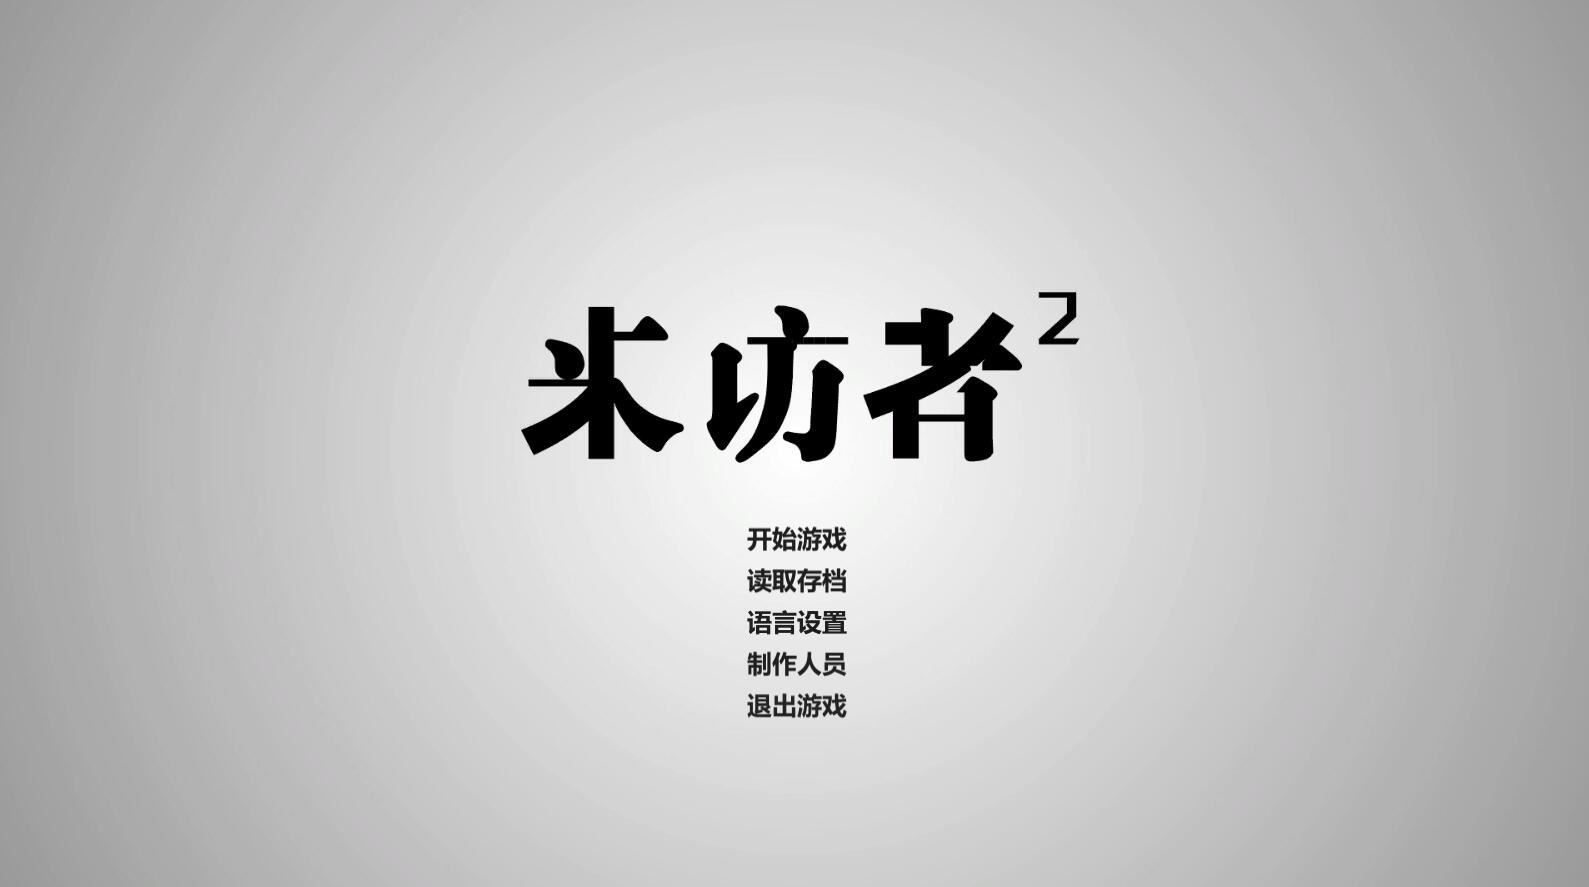 来访者2 全动态视频 华人制作侦探悬疑单机PC游戏 全程中文语音-游戏网